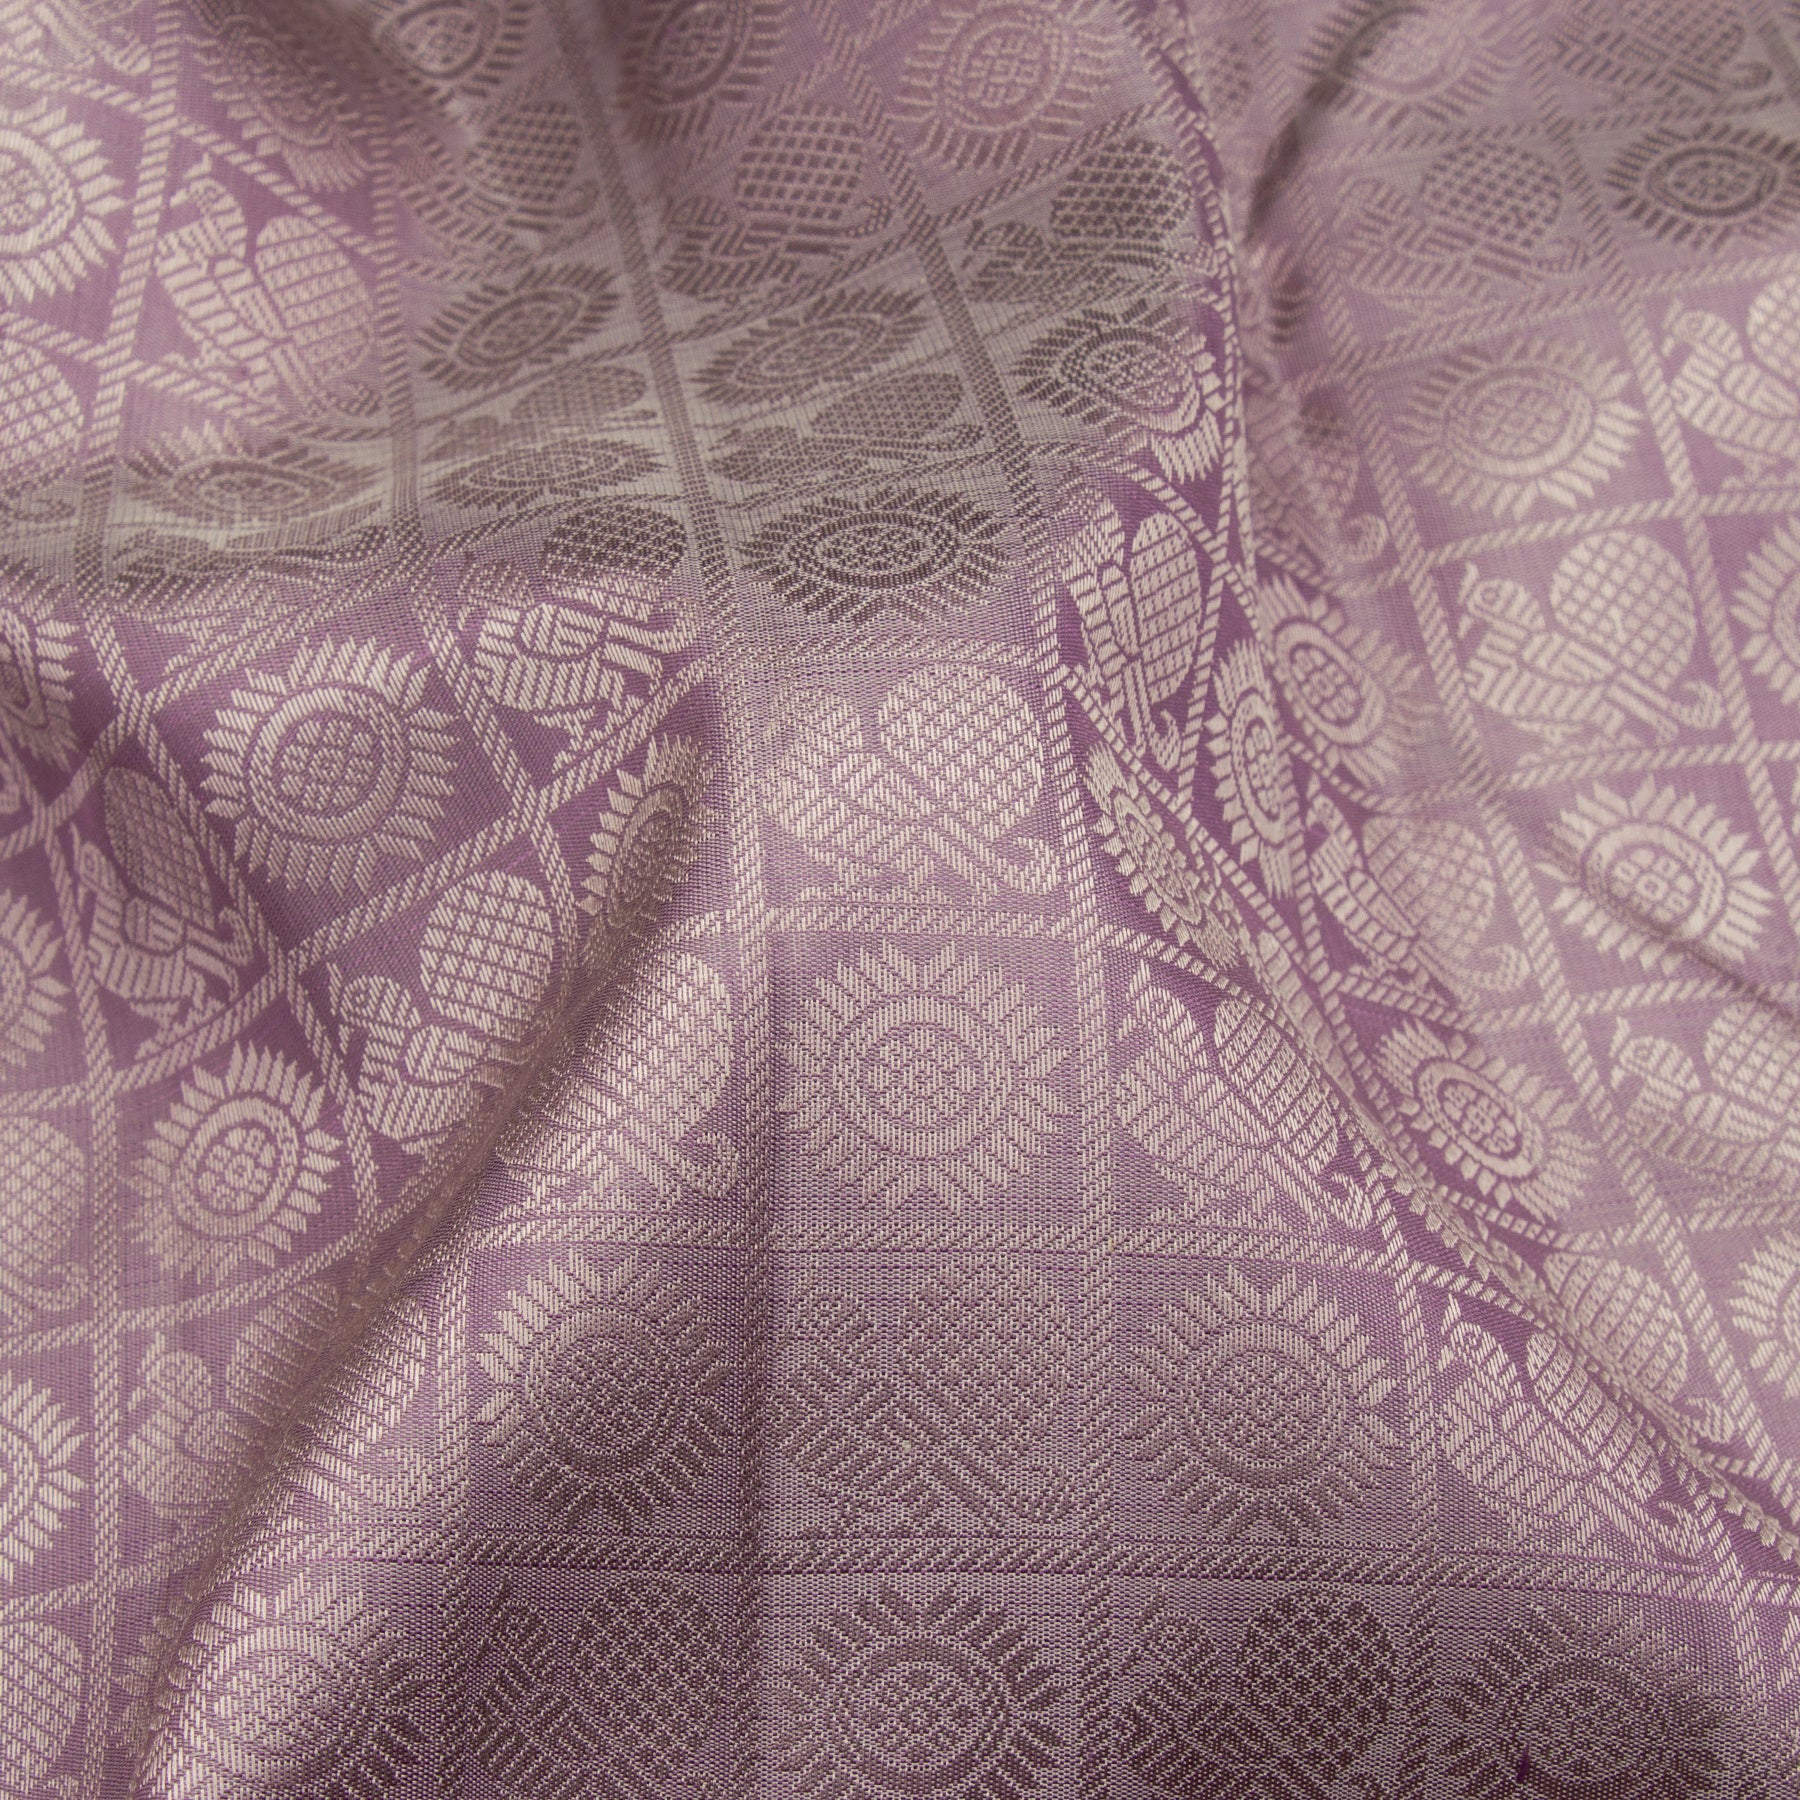 Kanakavalli Kanjivaram Silk Sari 23-611-HS001-12920 - Fabric View